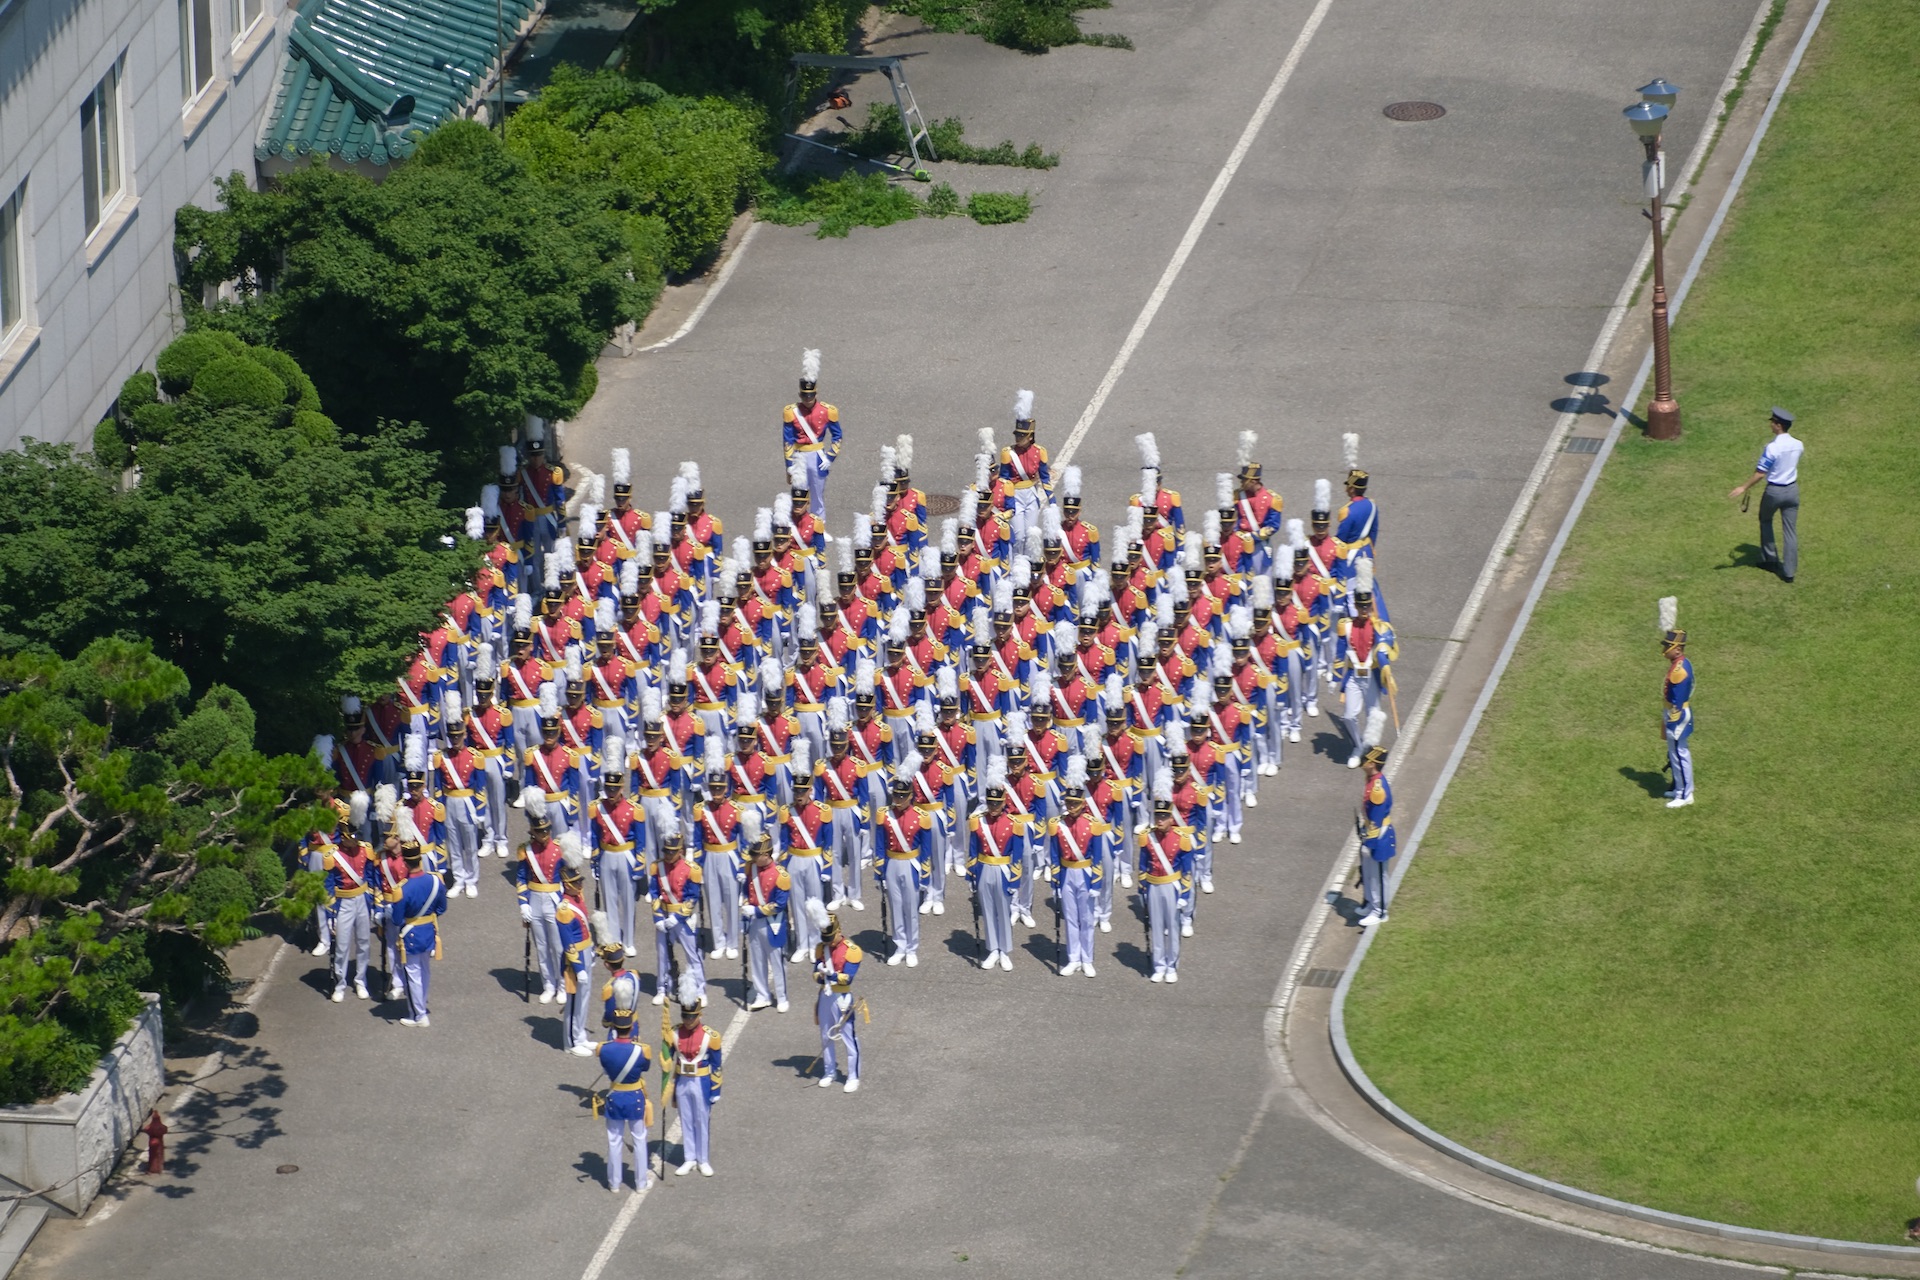 화랑의식을 앞두고 예복차림으로 연습하고 있는 육사생도들. | 박재현/에포크타임스